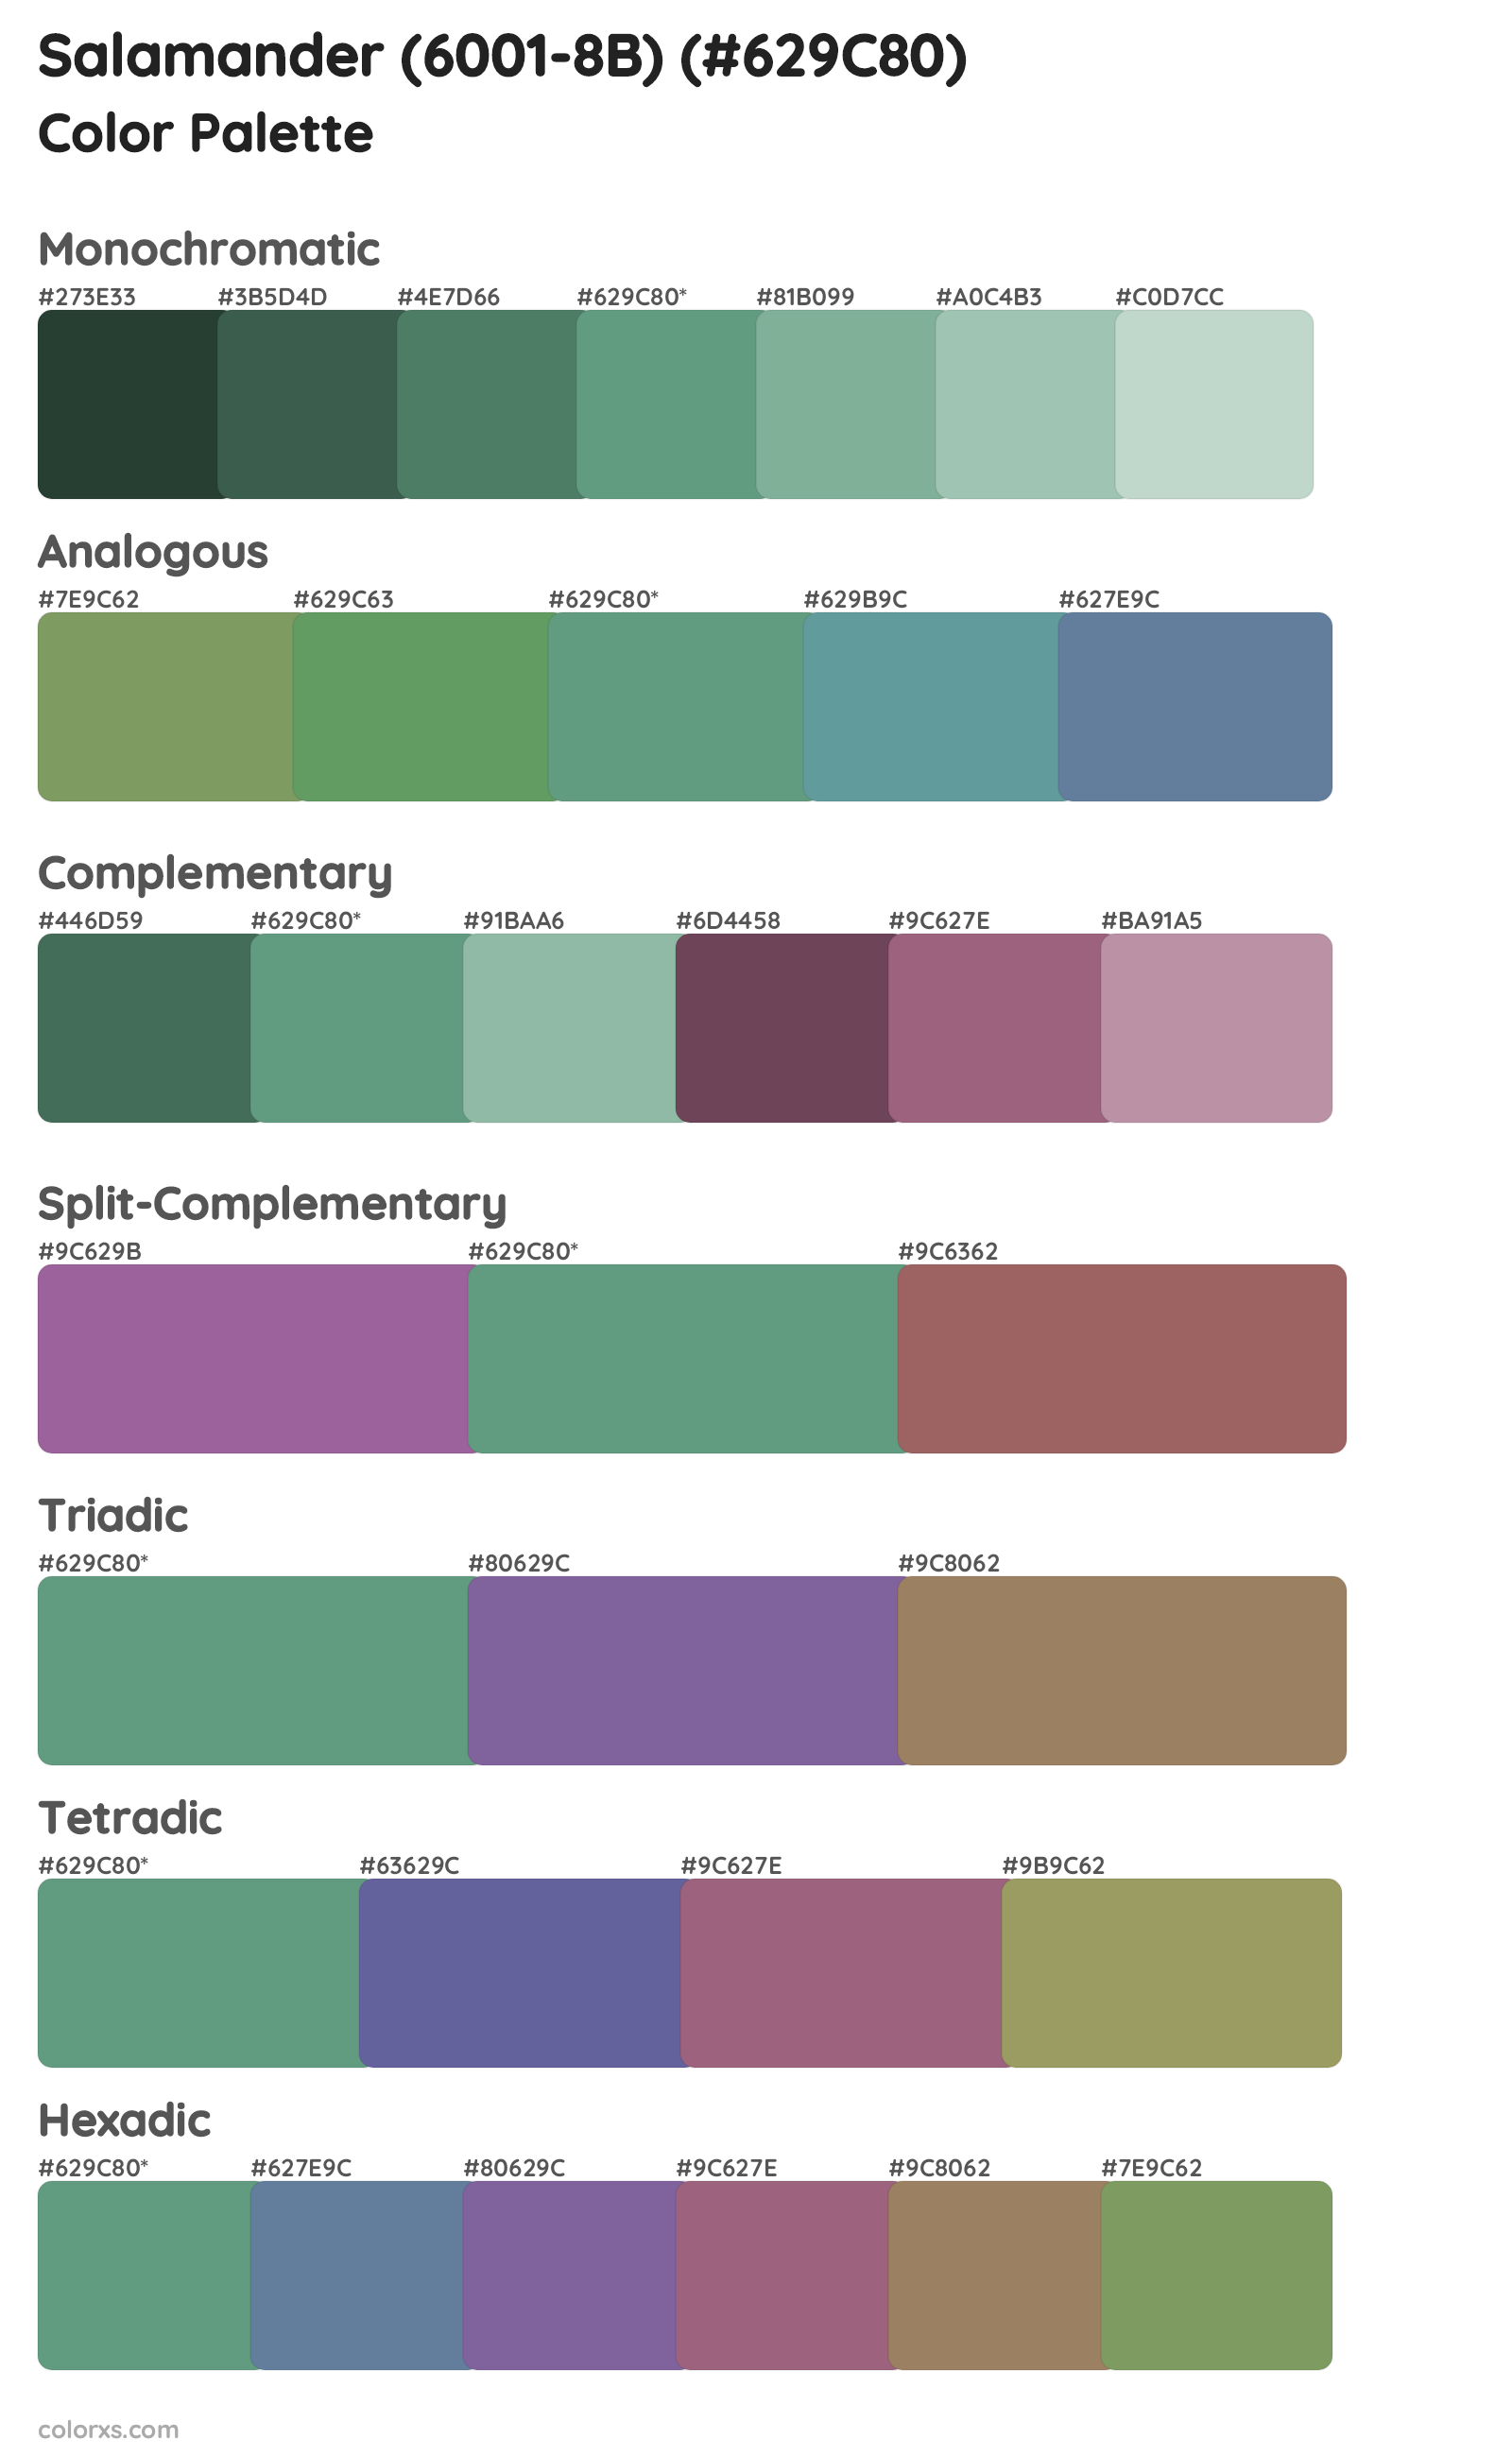 Salamander (6001-8B) Color Scheme Palettes